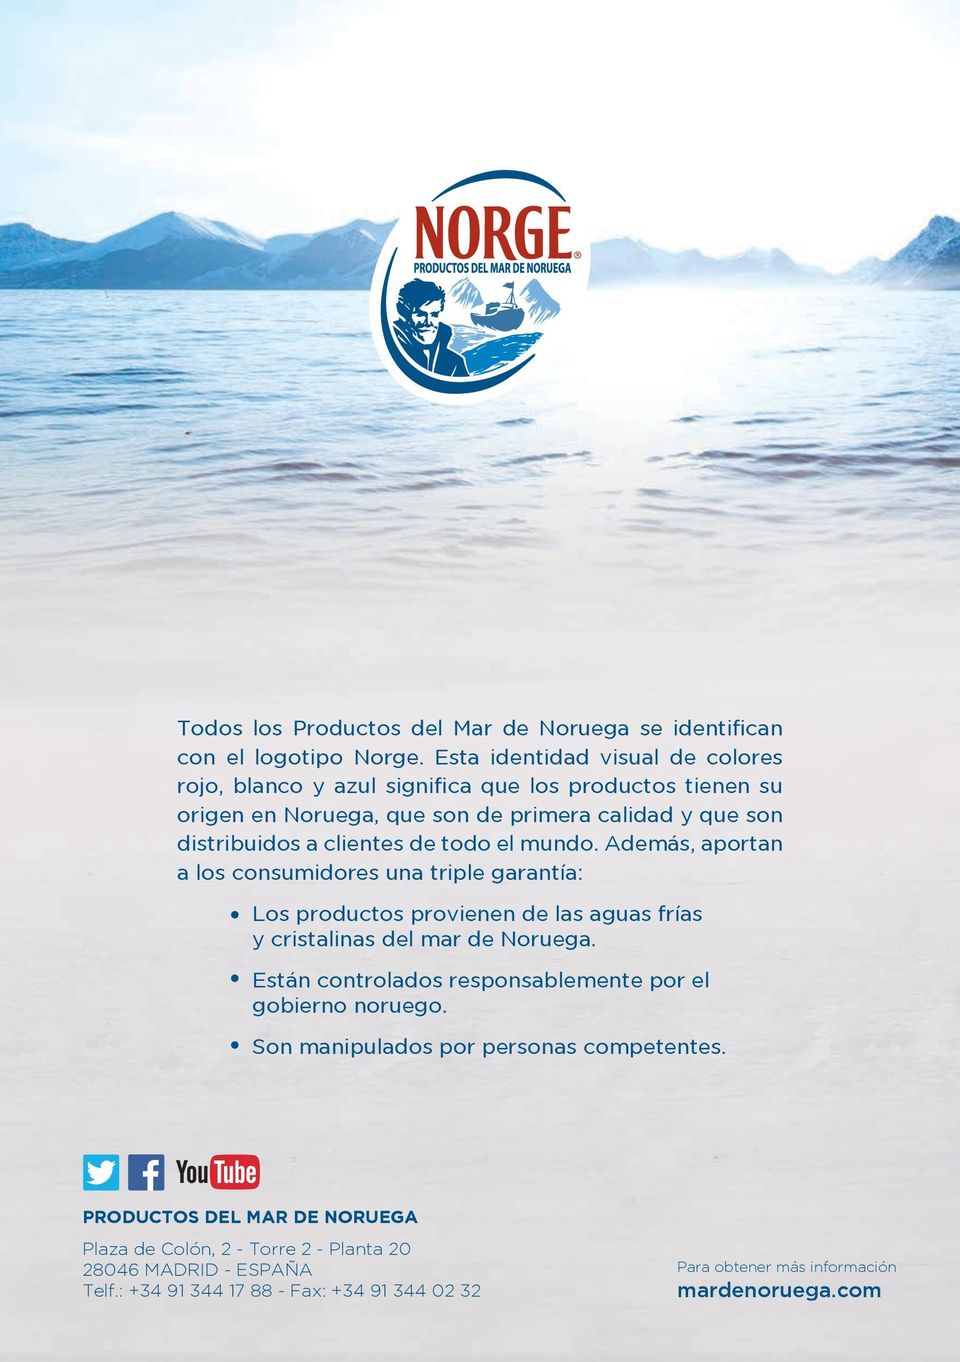 de todo el mundo. Además, aportan a los consumidores una triple garantía: Los productos provienen de las aguas frías y cristalinas del mar de Noruega.